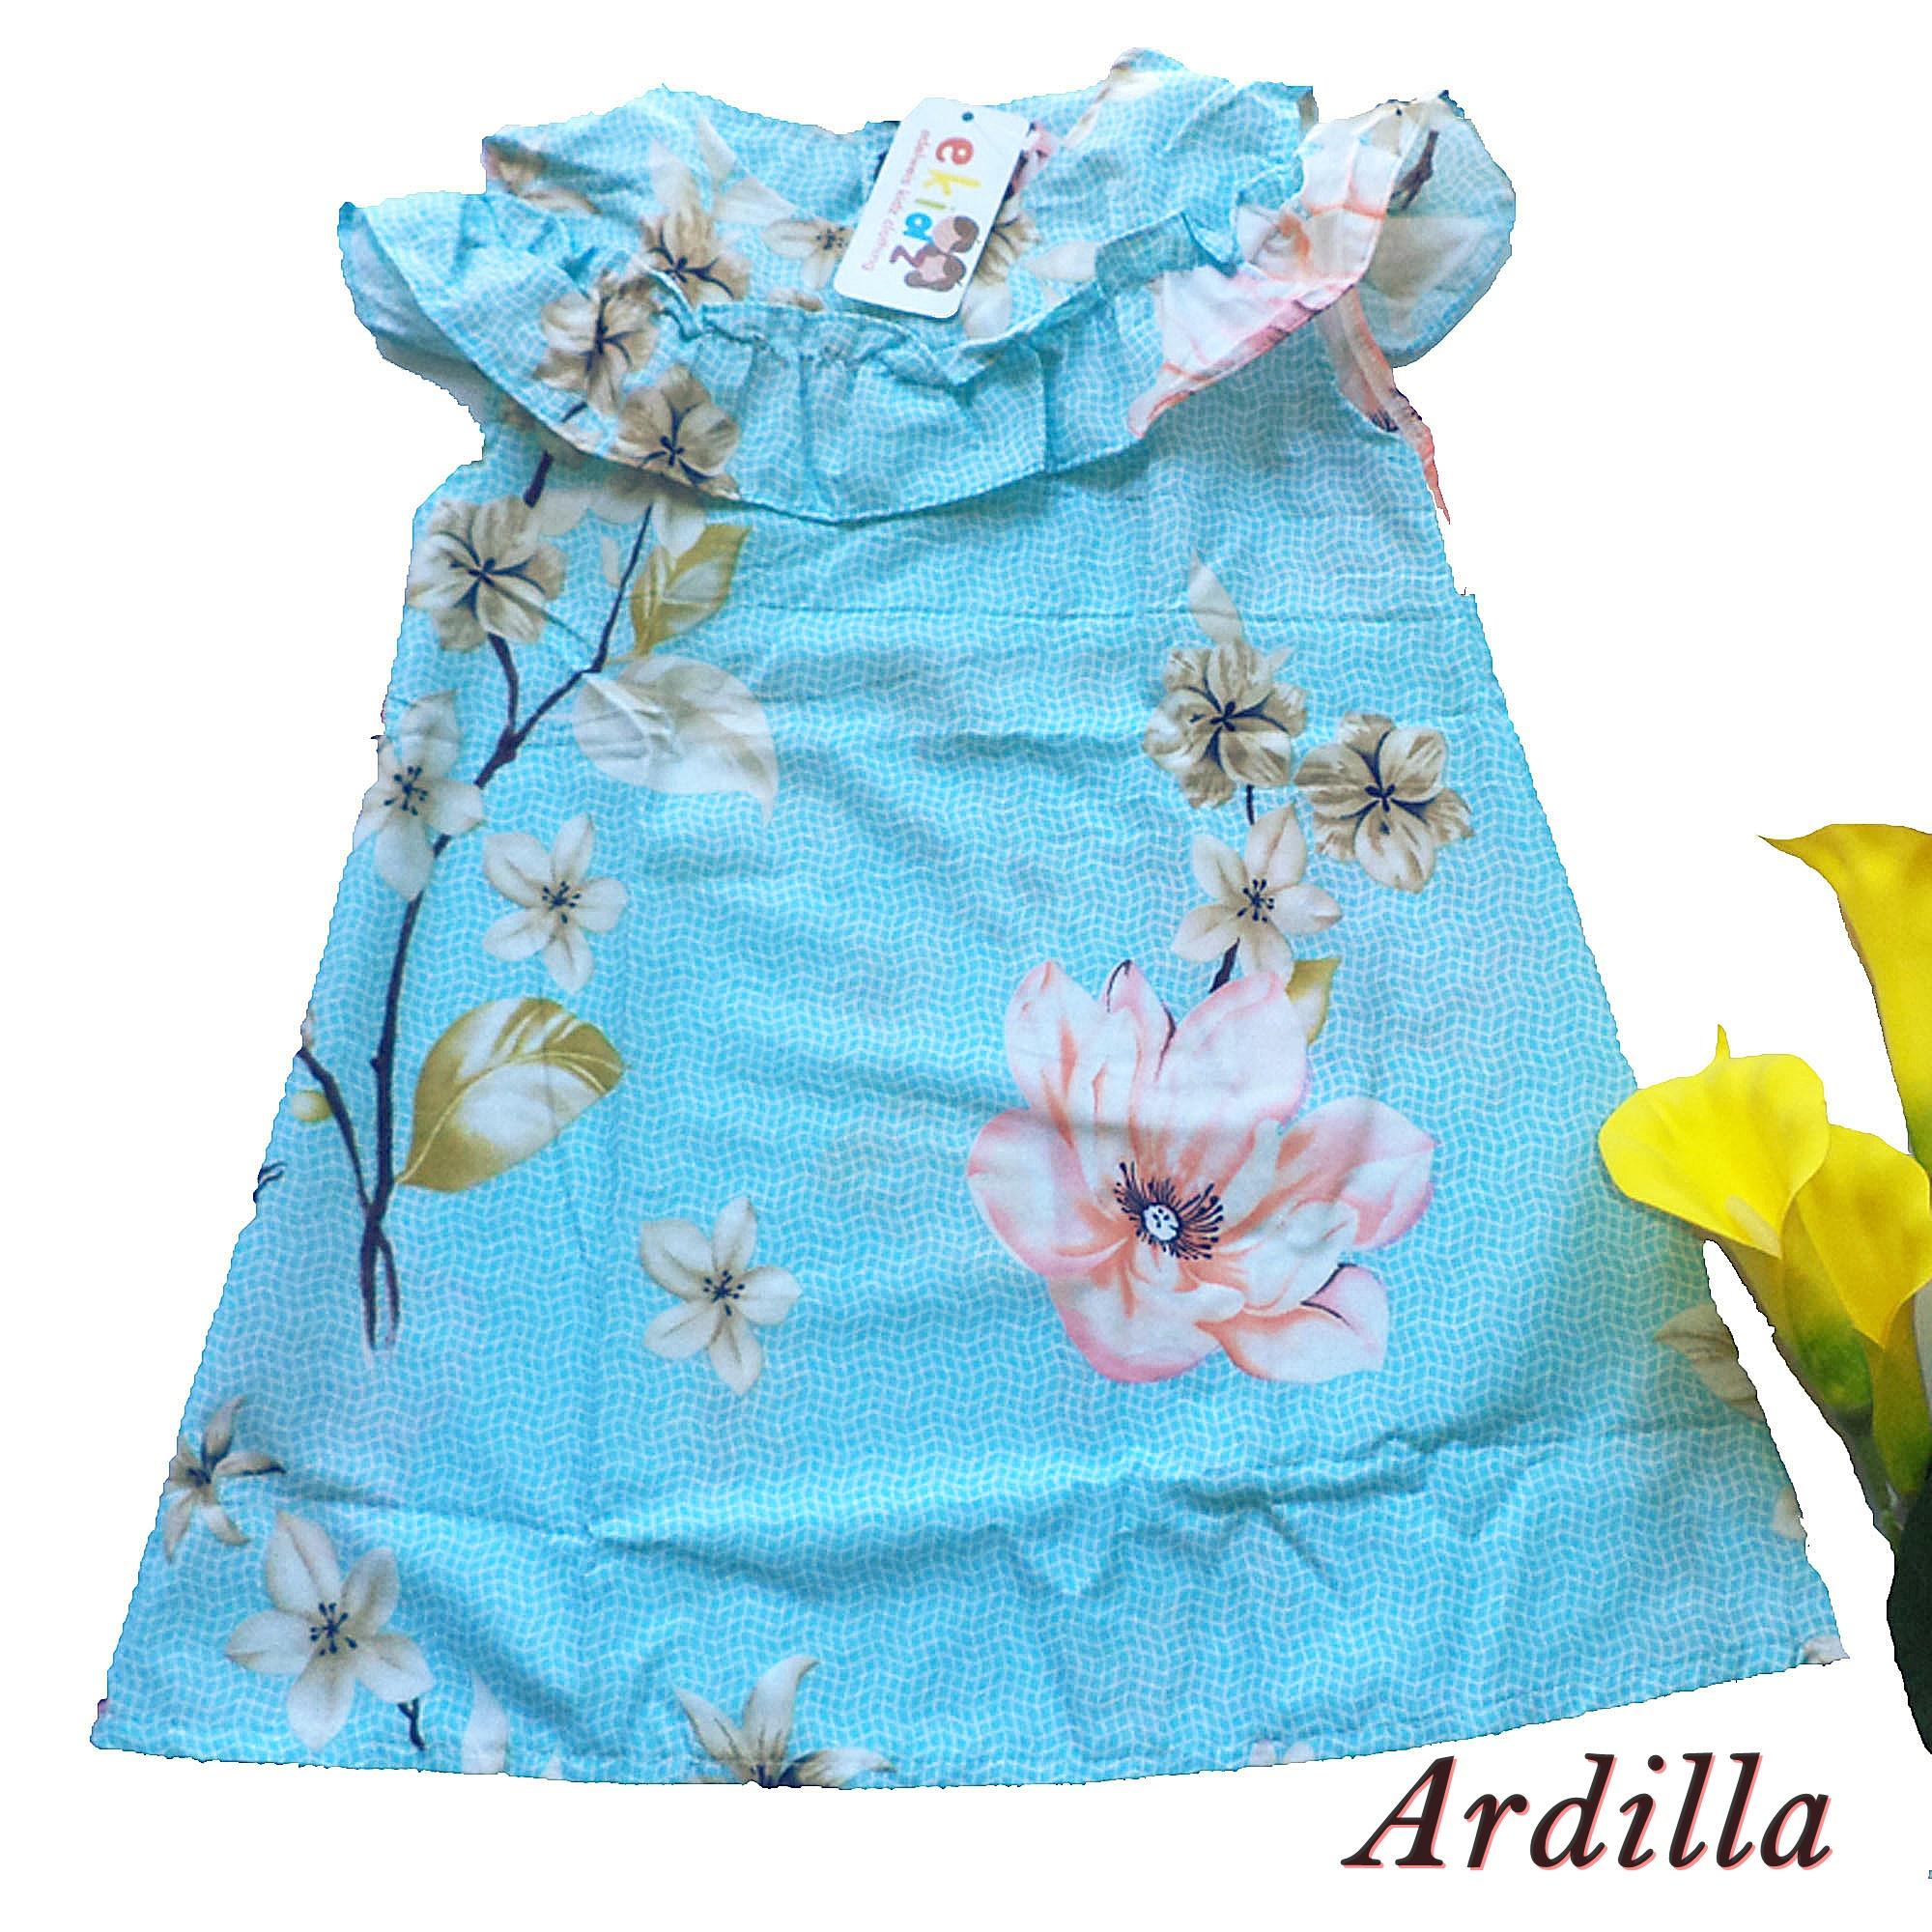 Ardilla Dress Anak Perempuan by Ekidz / Baju Dress Anak / Pakaian Anak Perempuan / Baju Anak Perempuan / Baju Dres Anak Perempuan - Biru